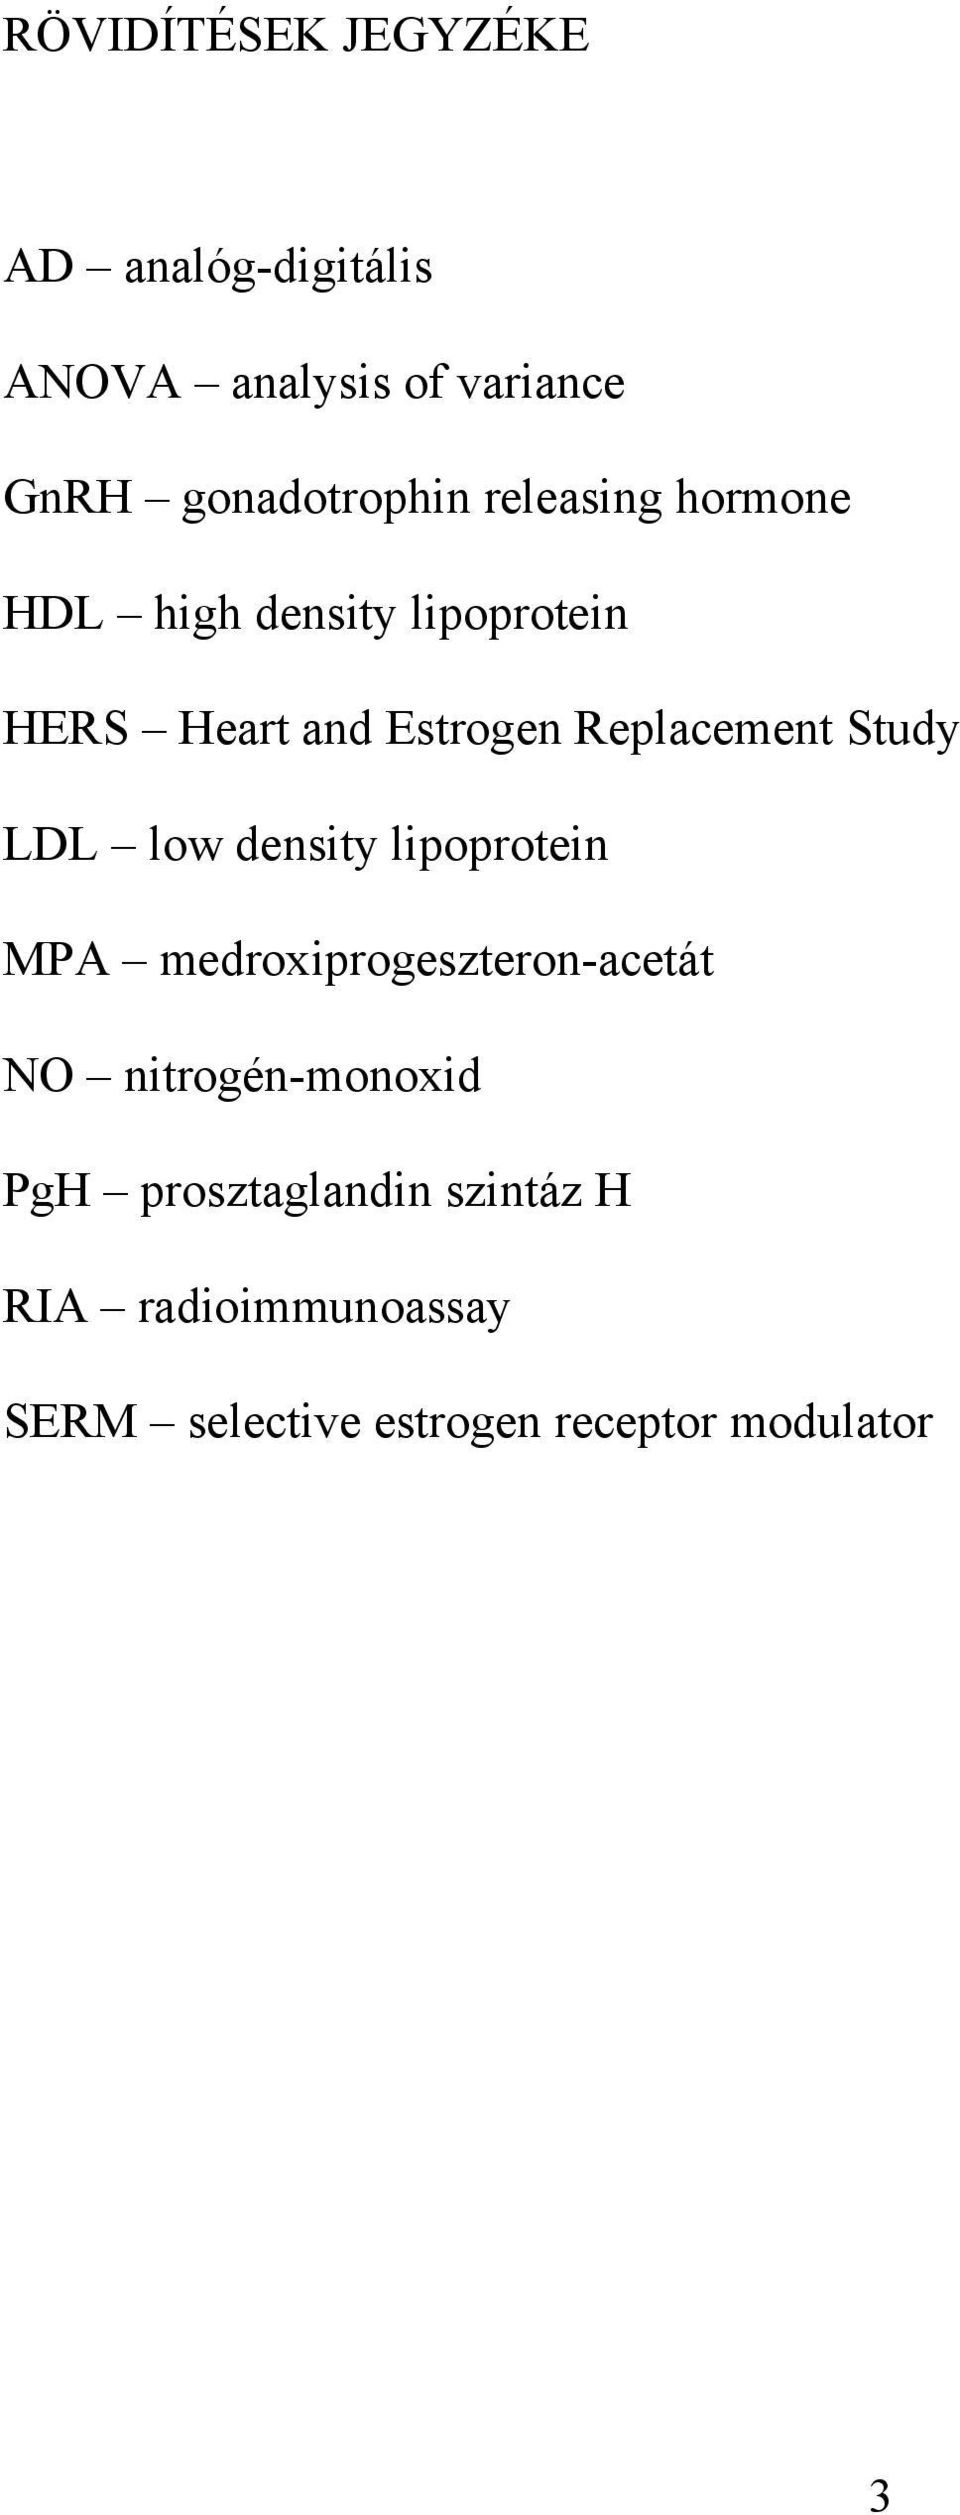 Study LDL low density lipoprotein MPA medroxiprogeszteron-acetát NO nitrogén-monoxid